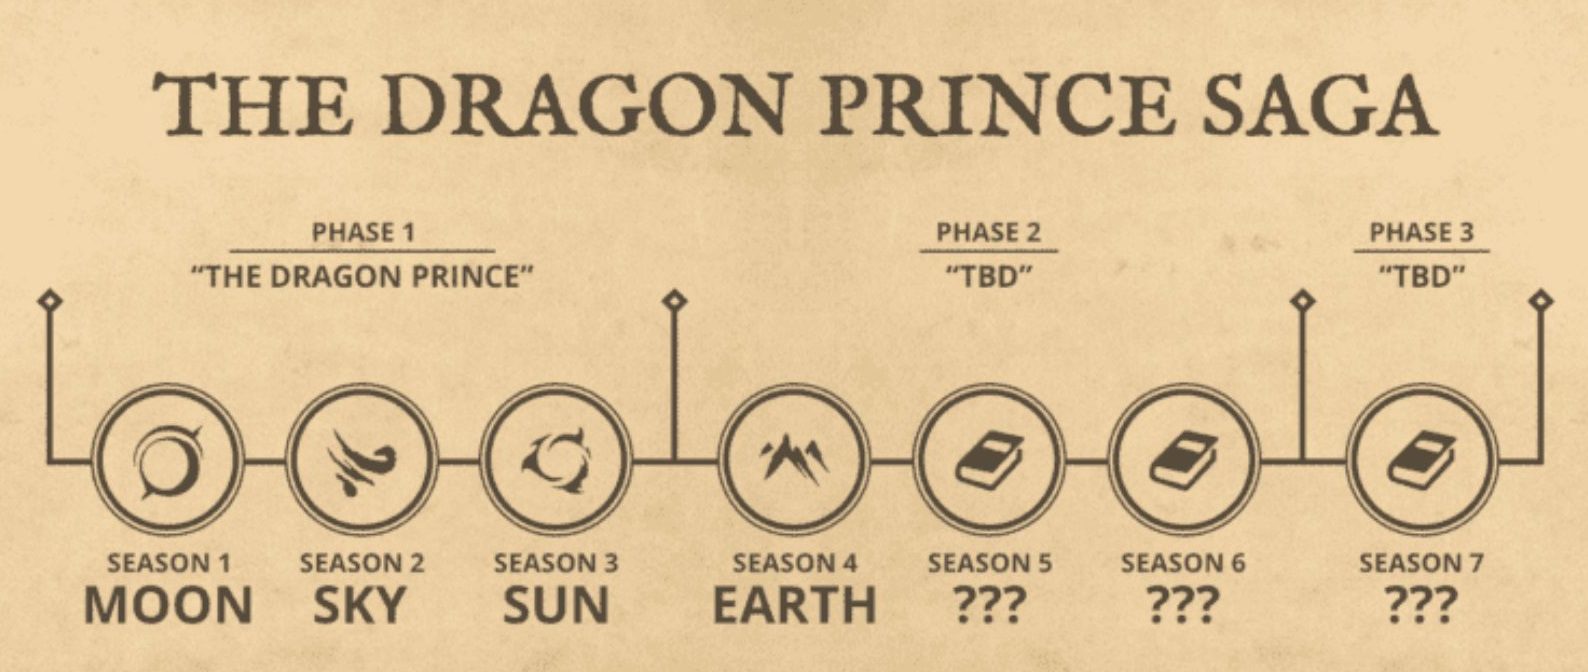 dragon prince s4 trailer